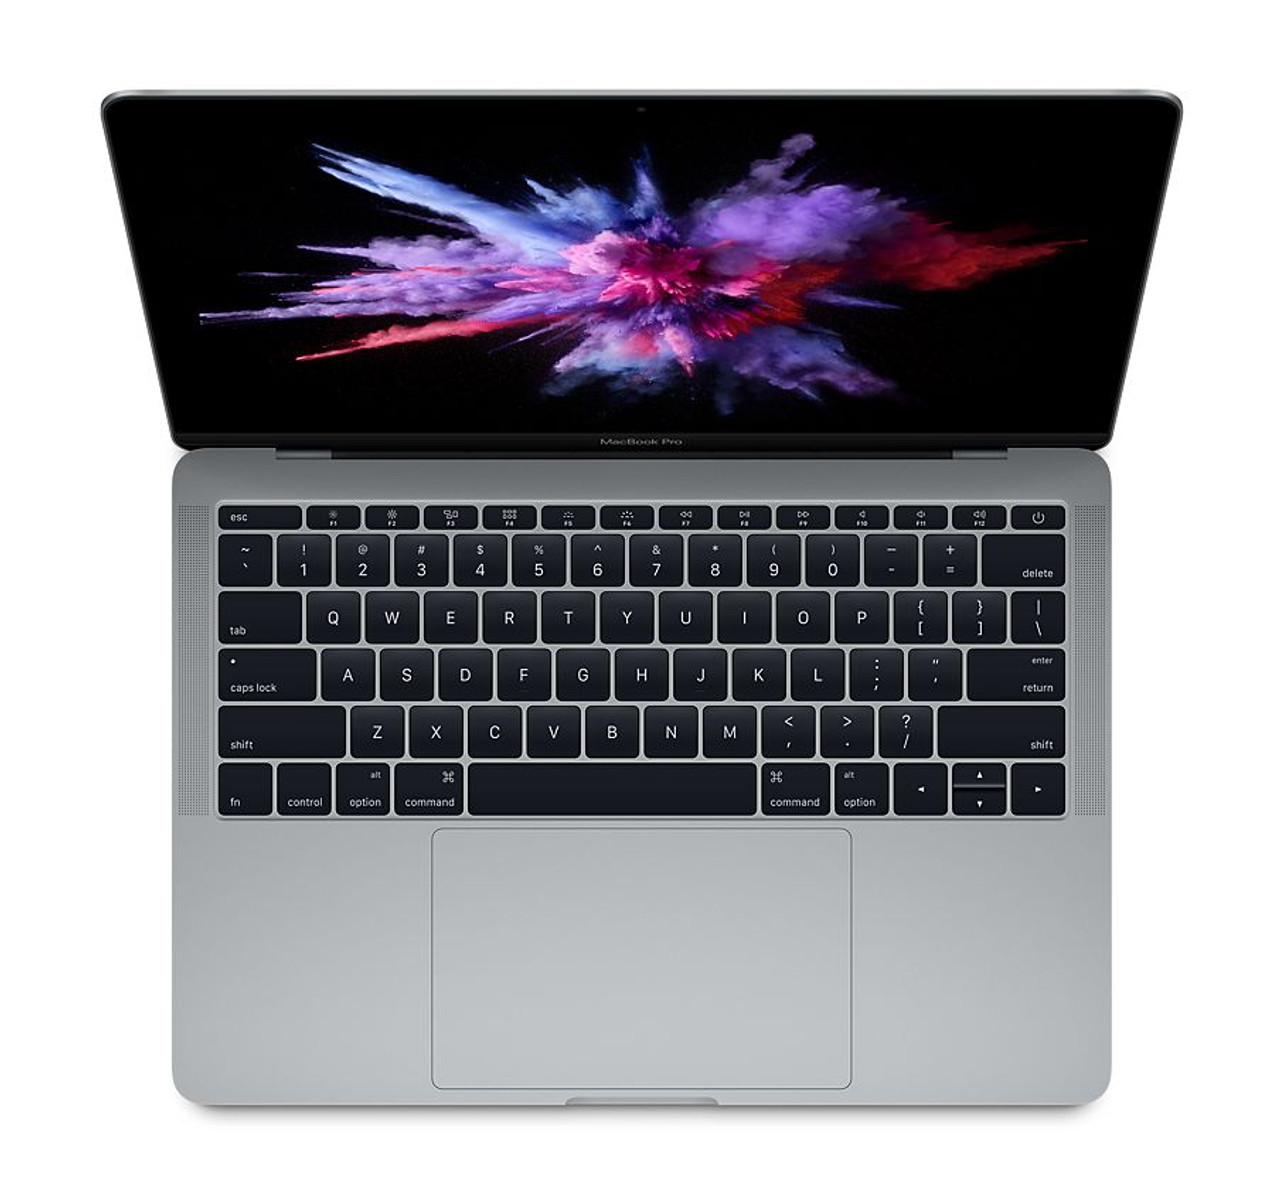 Apple® MacBook Pro, 13.3-Inch Retina, 8GB RAM, 128GB SSD, MPXR2LL/A product image